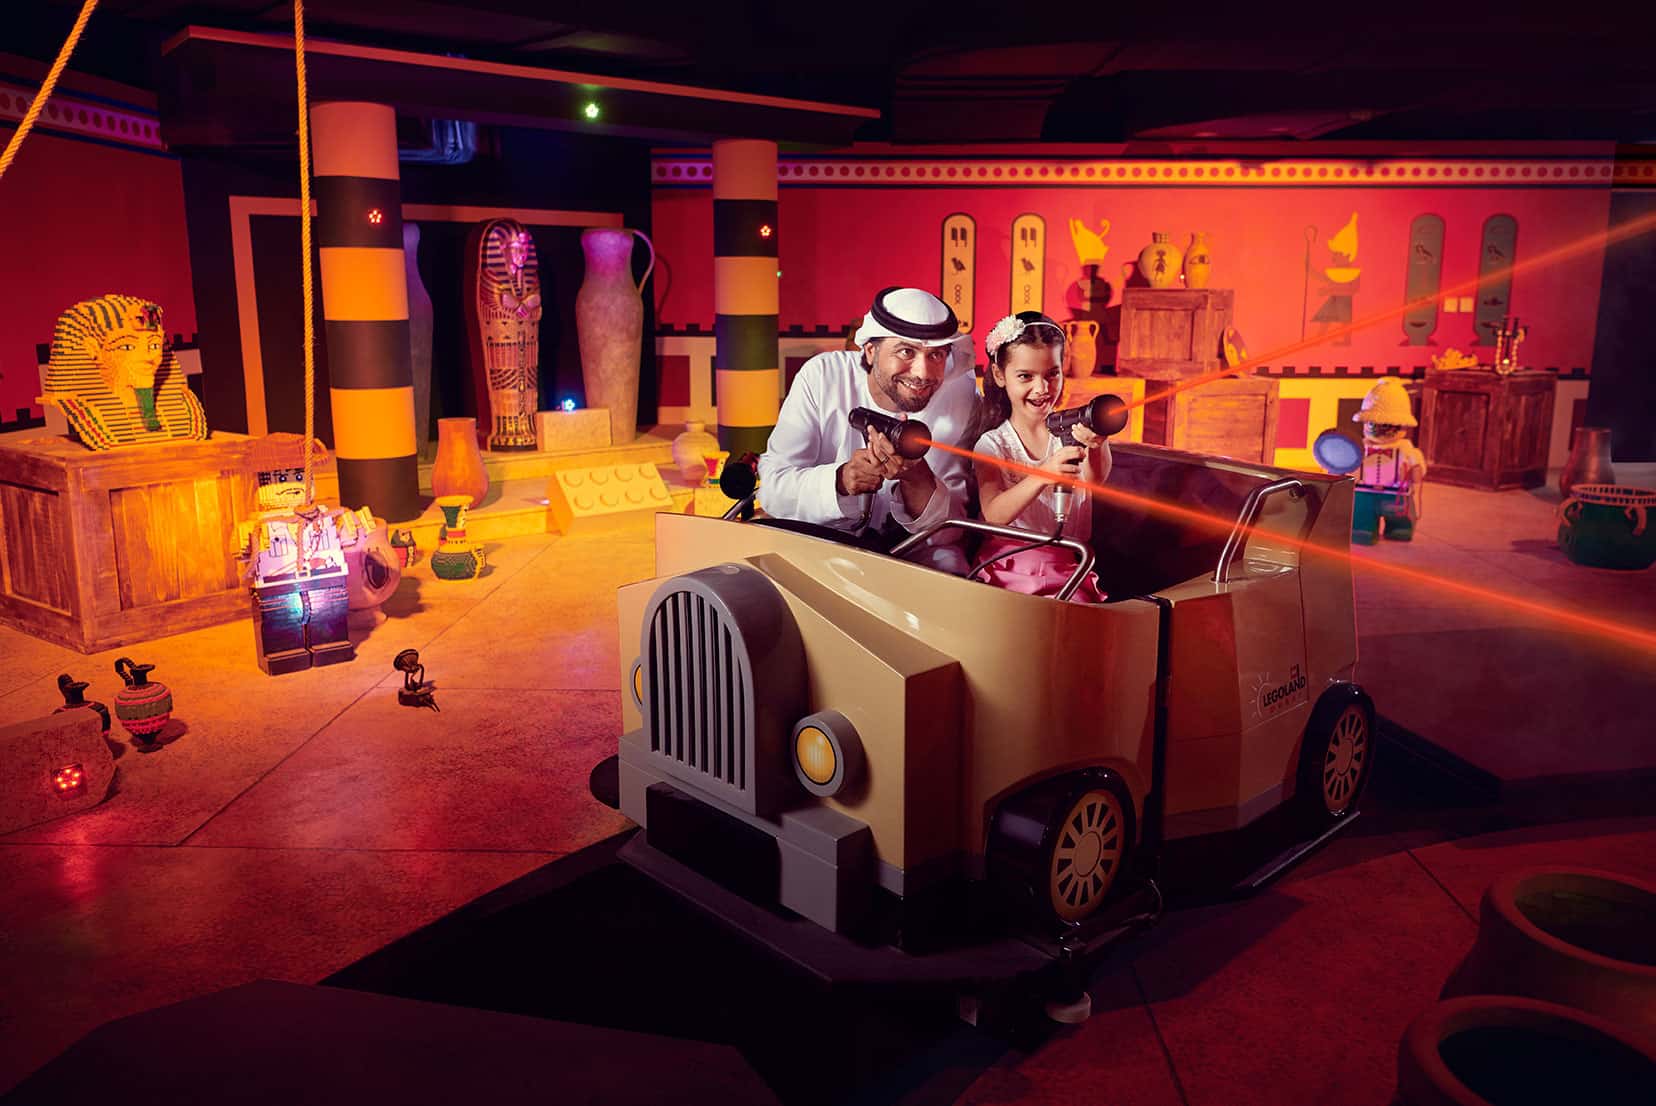 مقاصد سرپوشیده در دبی فضایی پر از سرگرمی، فعالیت های تعاملی و سرگرمی را فراهم می کند که کودکان را به وجد می آورد